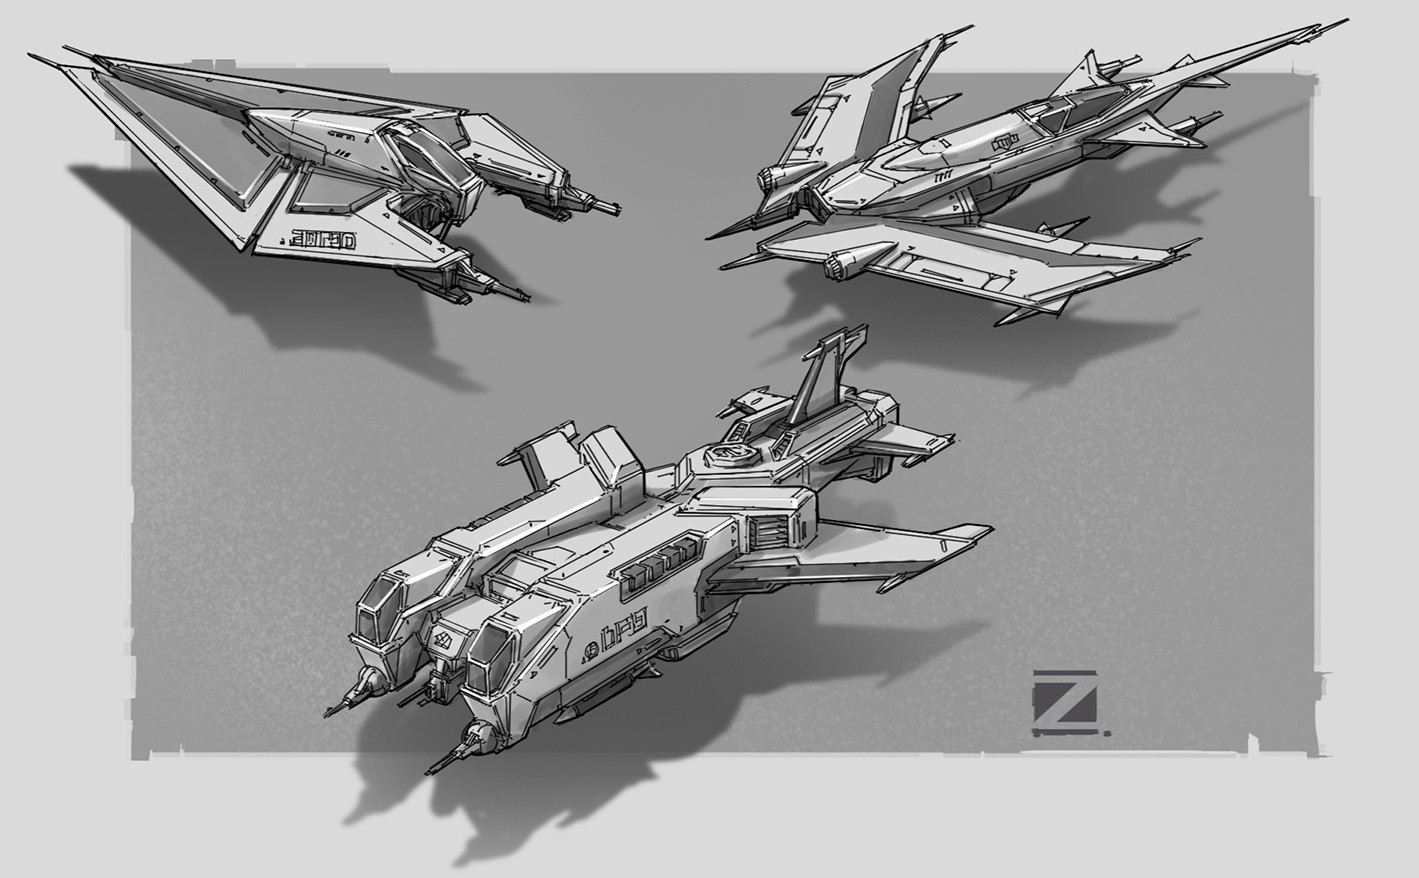 Fine Art: More Realistic Starfighter Propulsion Designs, Please